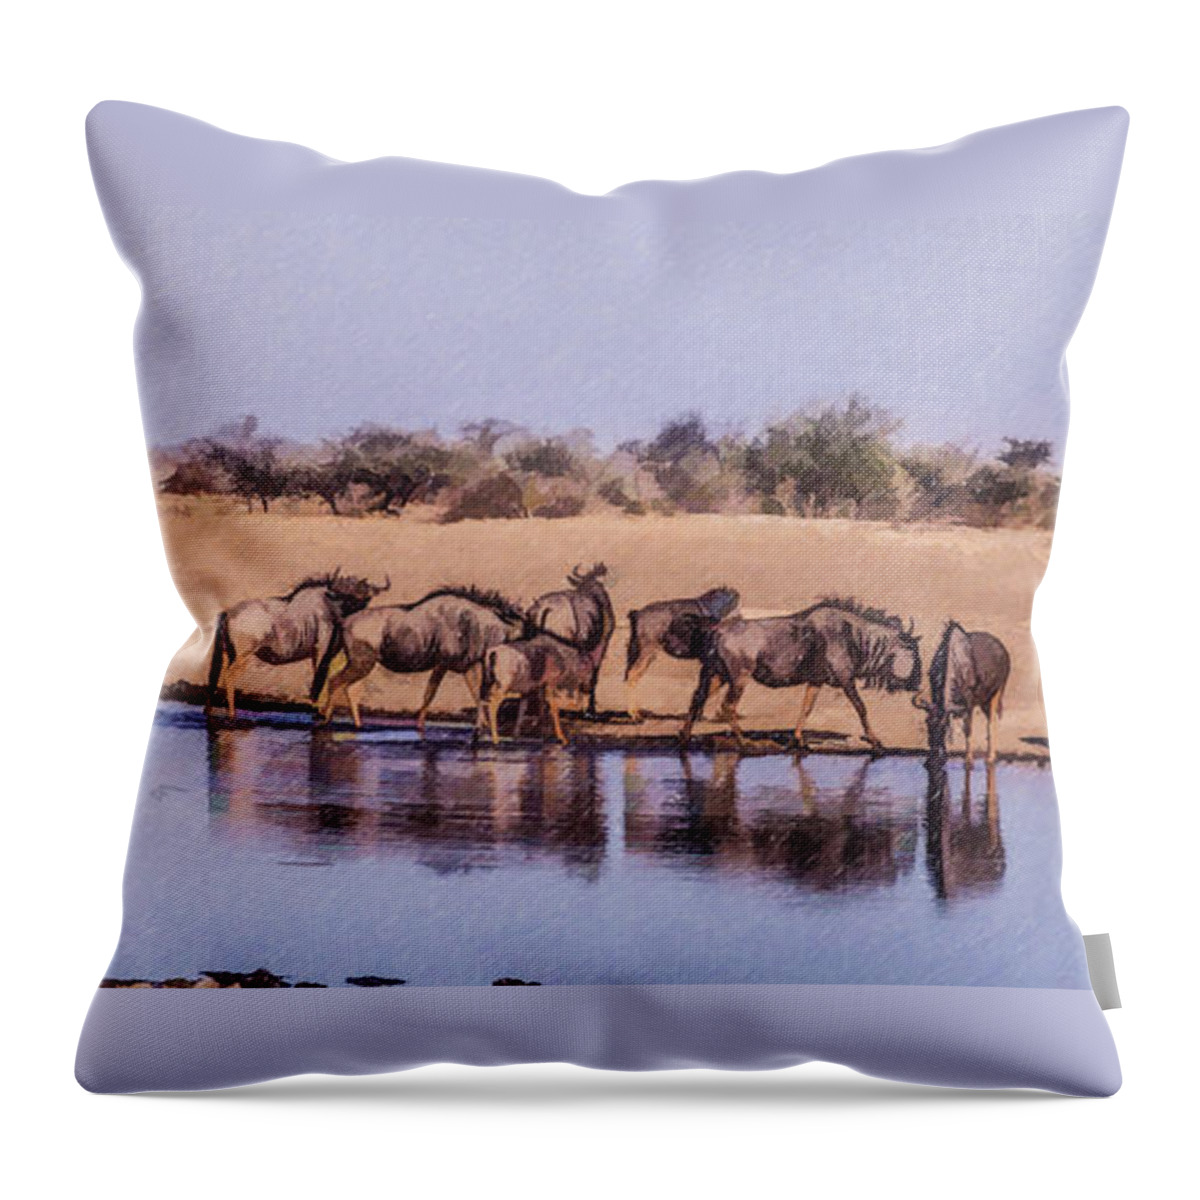 Wildebeest Throw Pillow featuring the digital art Wildebeest at an Etosha waterhole by Liz Leyden